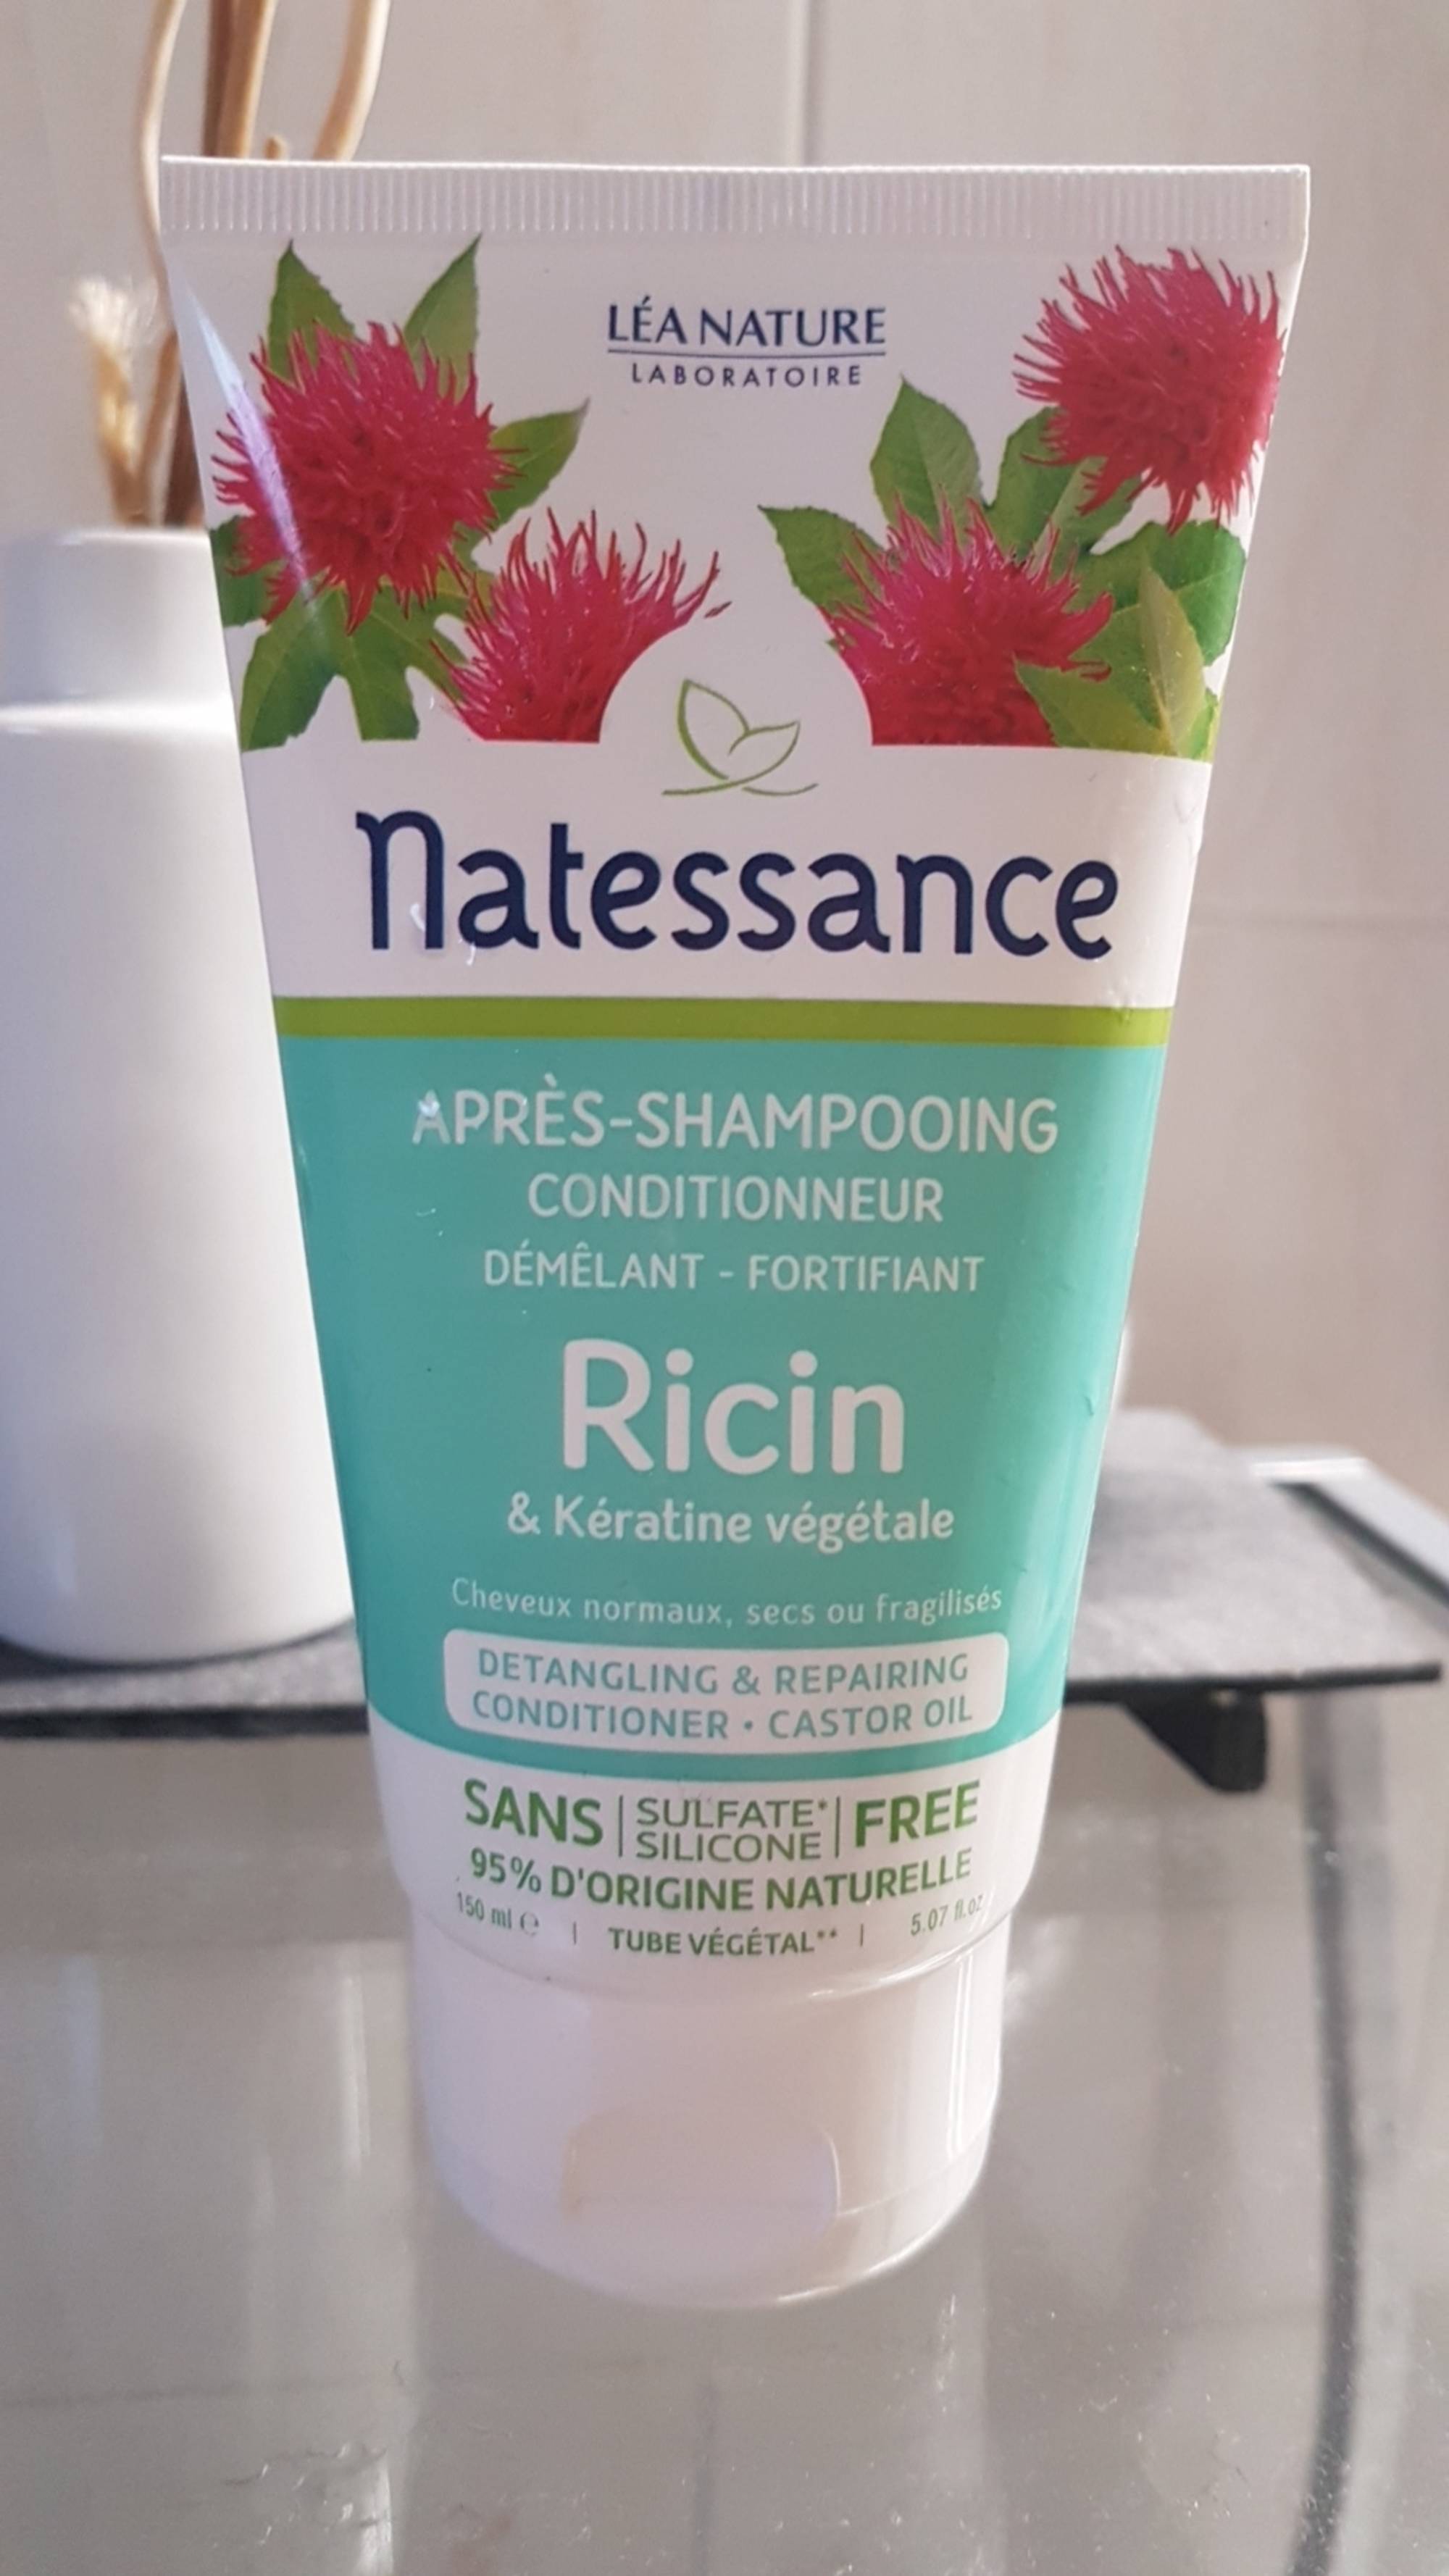 NATESSANCE - Après-shampooing conditionneur